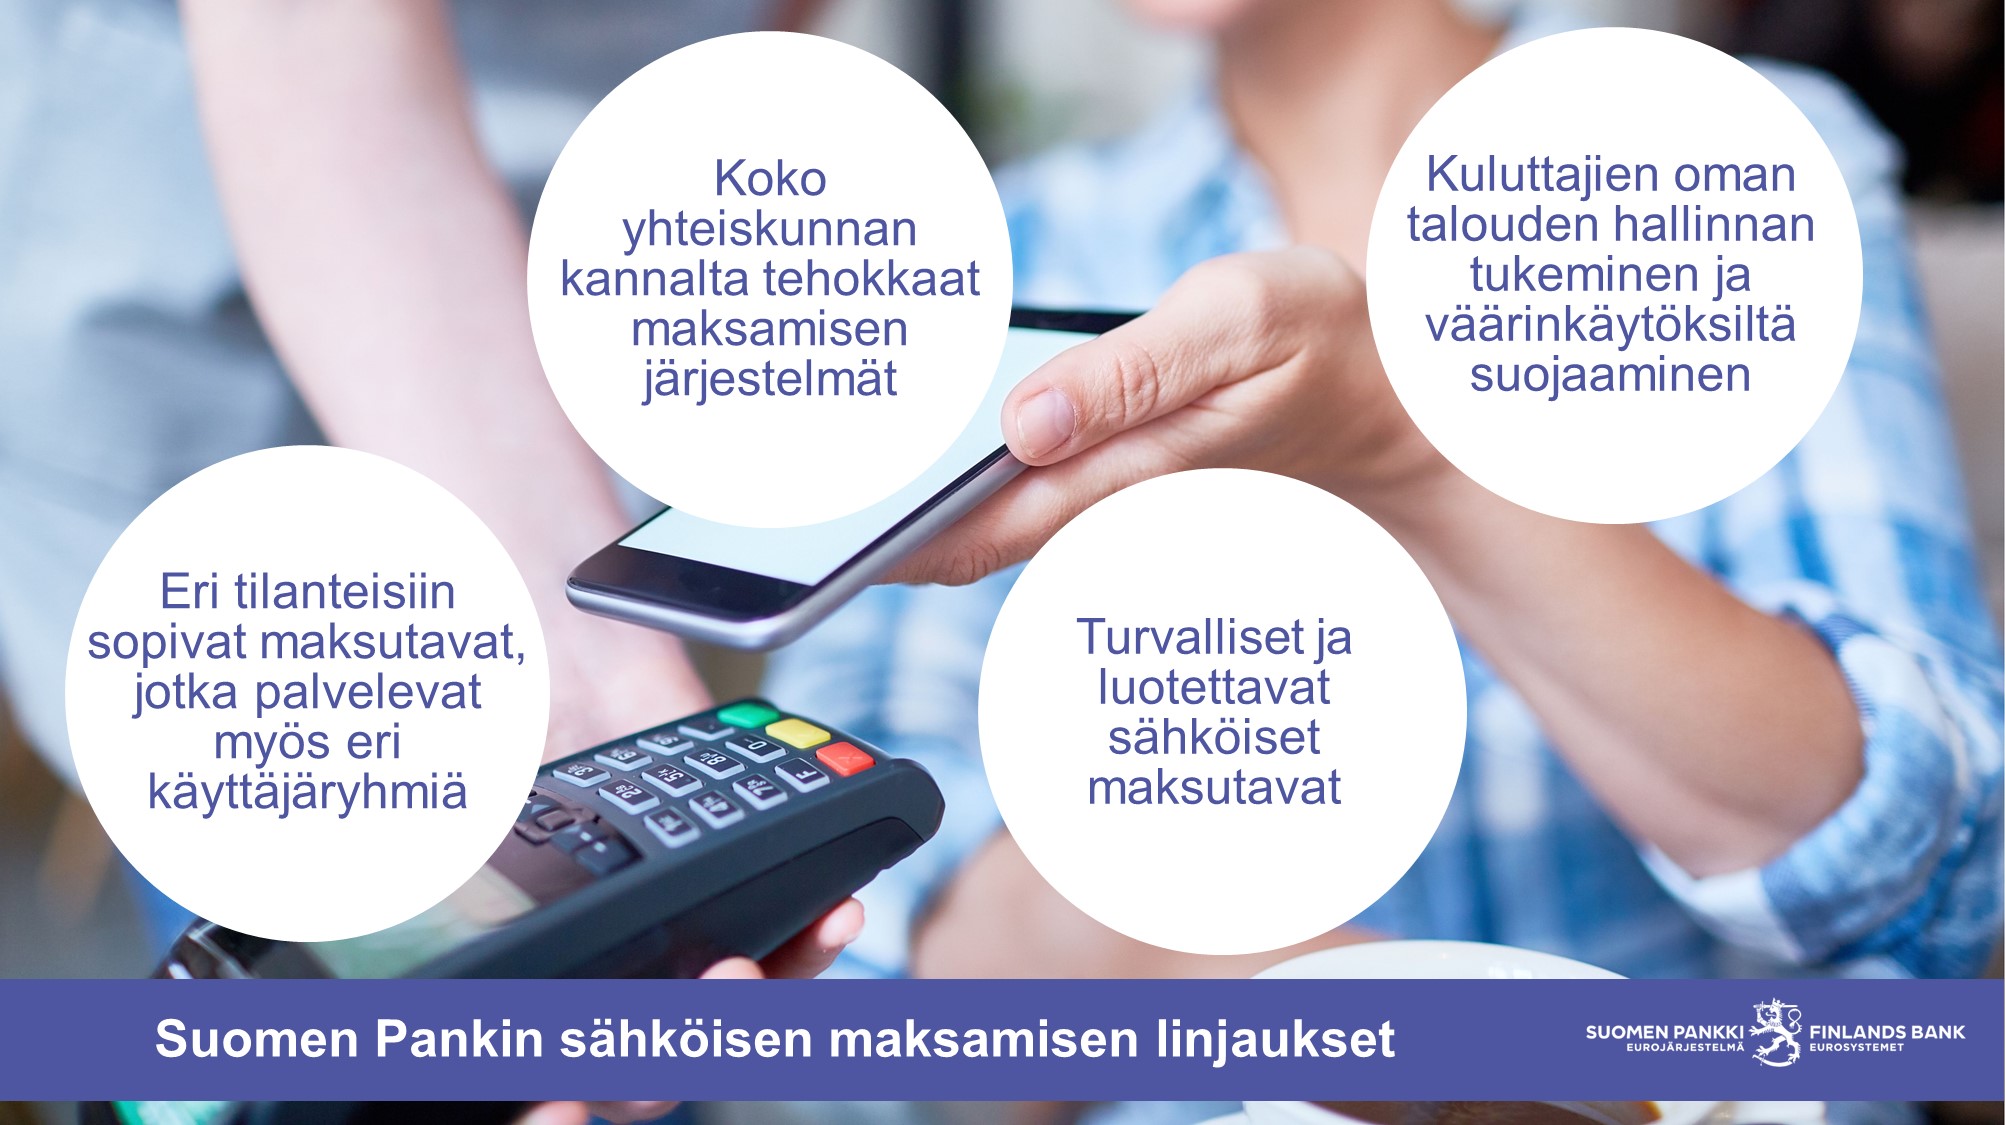 Suomen Pankin sähköisen maksamisen linjaukset: 1. Eri tilanteisiin sopivat maksutavat, jotka palvelevat myös eri käyttäjäryhmiä. 2. Koko yhteiskunnan kannalta tehokkaat maksamisen järjestelmät. 3. Turvalliset ja luotettavat sähköiset maksutavat. 4. Kuluttajien oman talouden hallinnan tukeminen ja väärinkäytöksiltä suojaaminen.